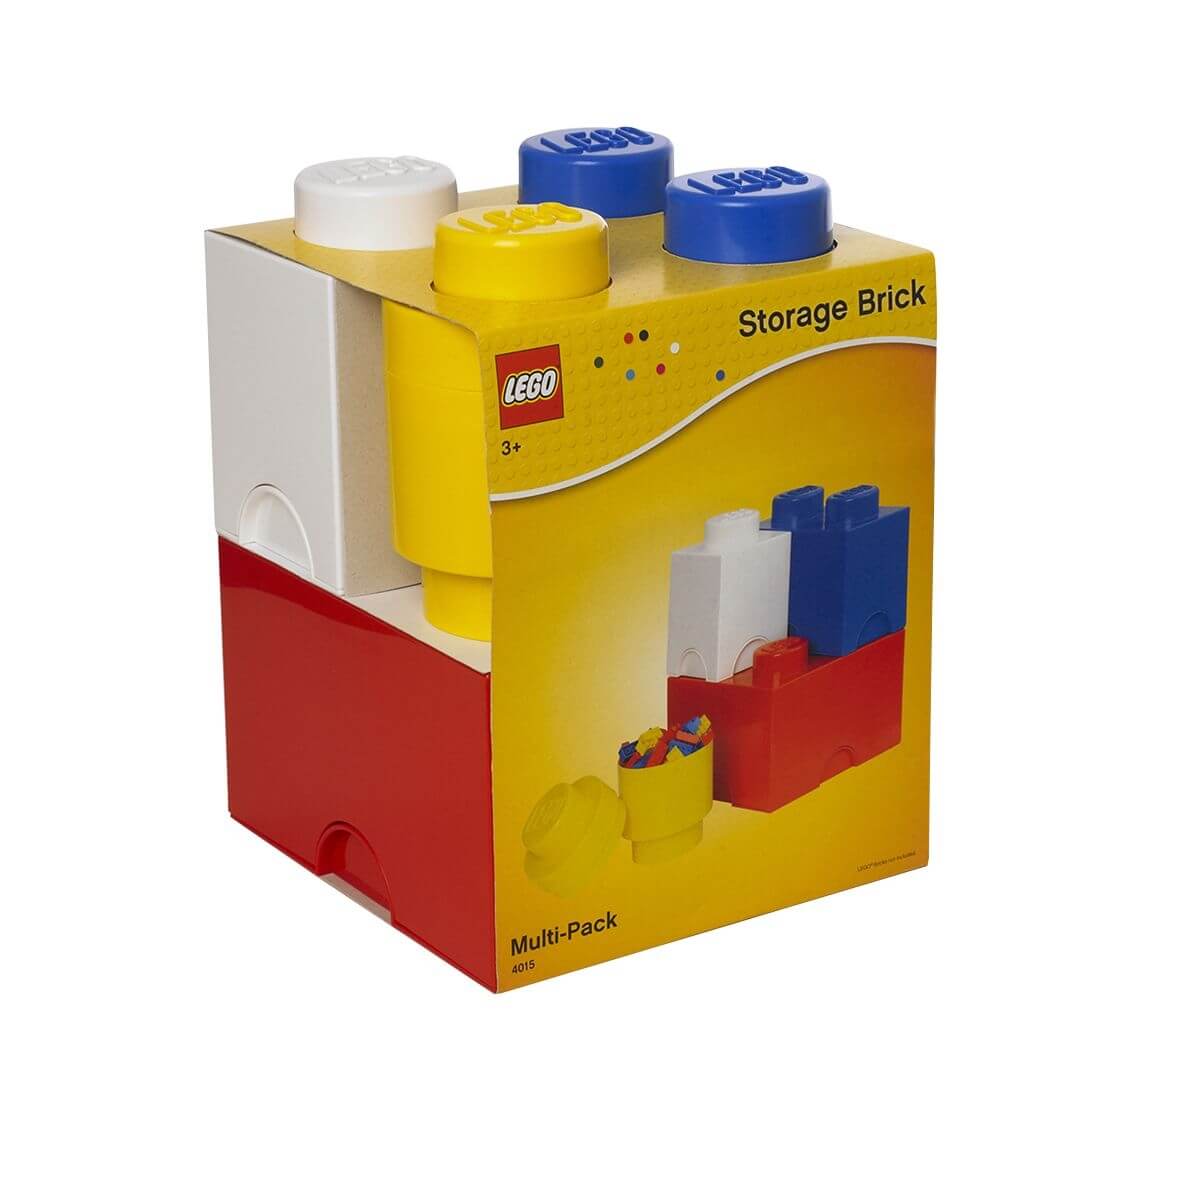 Rangement des pièces LEGO - Rangement des pièces LEGO - Forum